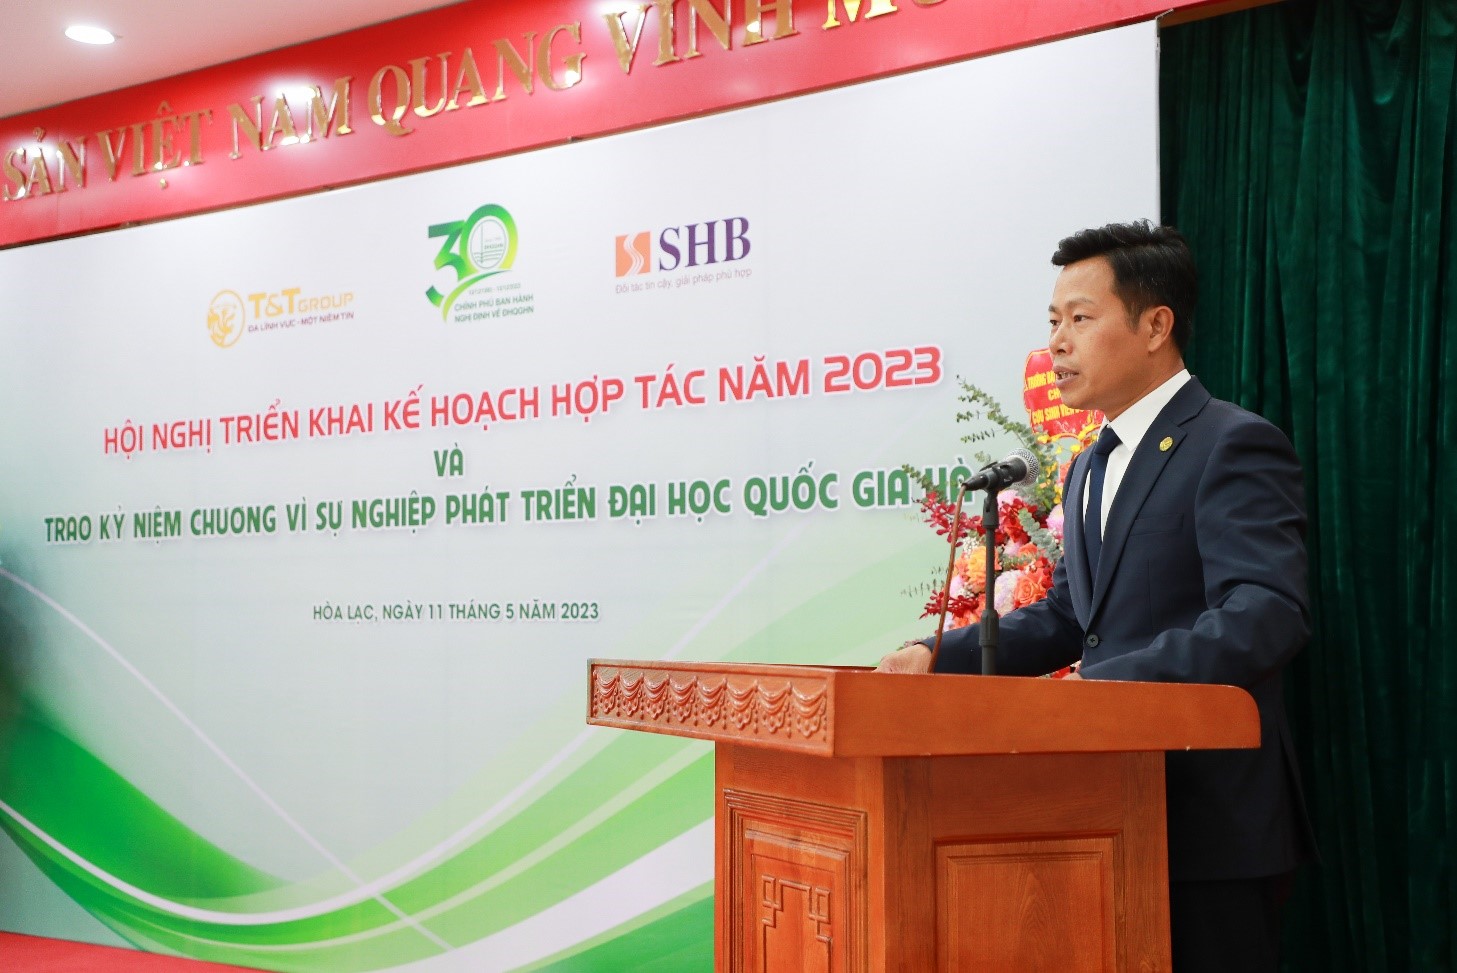 Kinh tế - Doanh nhân Đỗ Quang Hiển nhận kỷ niệm chương vì sự nghiệp phát triển Đại học Quốc gia Hà Nội (Hình 2).